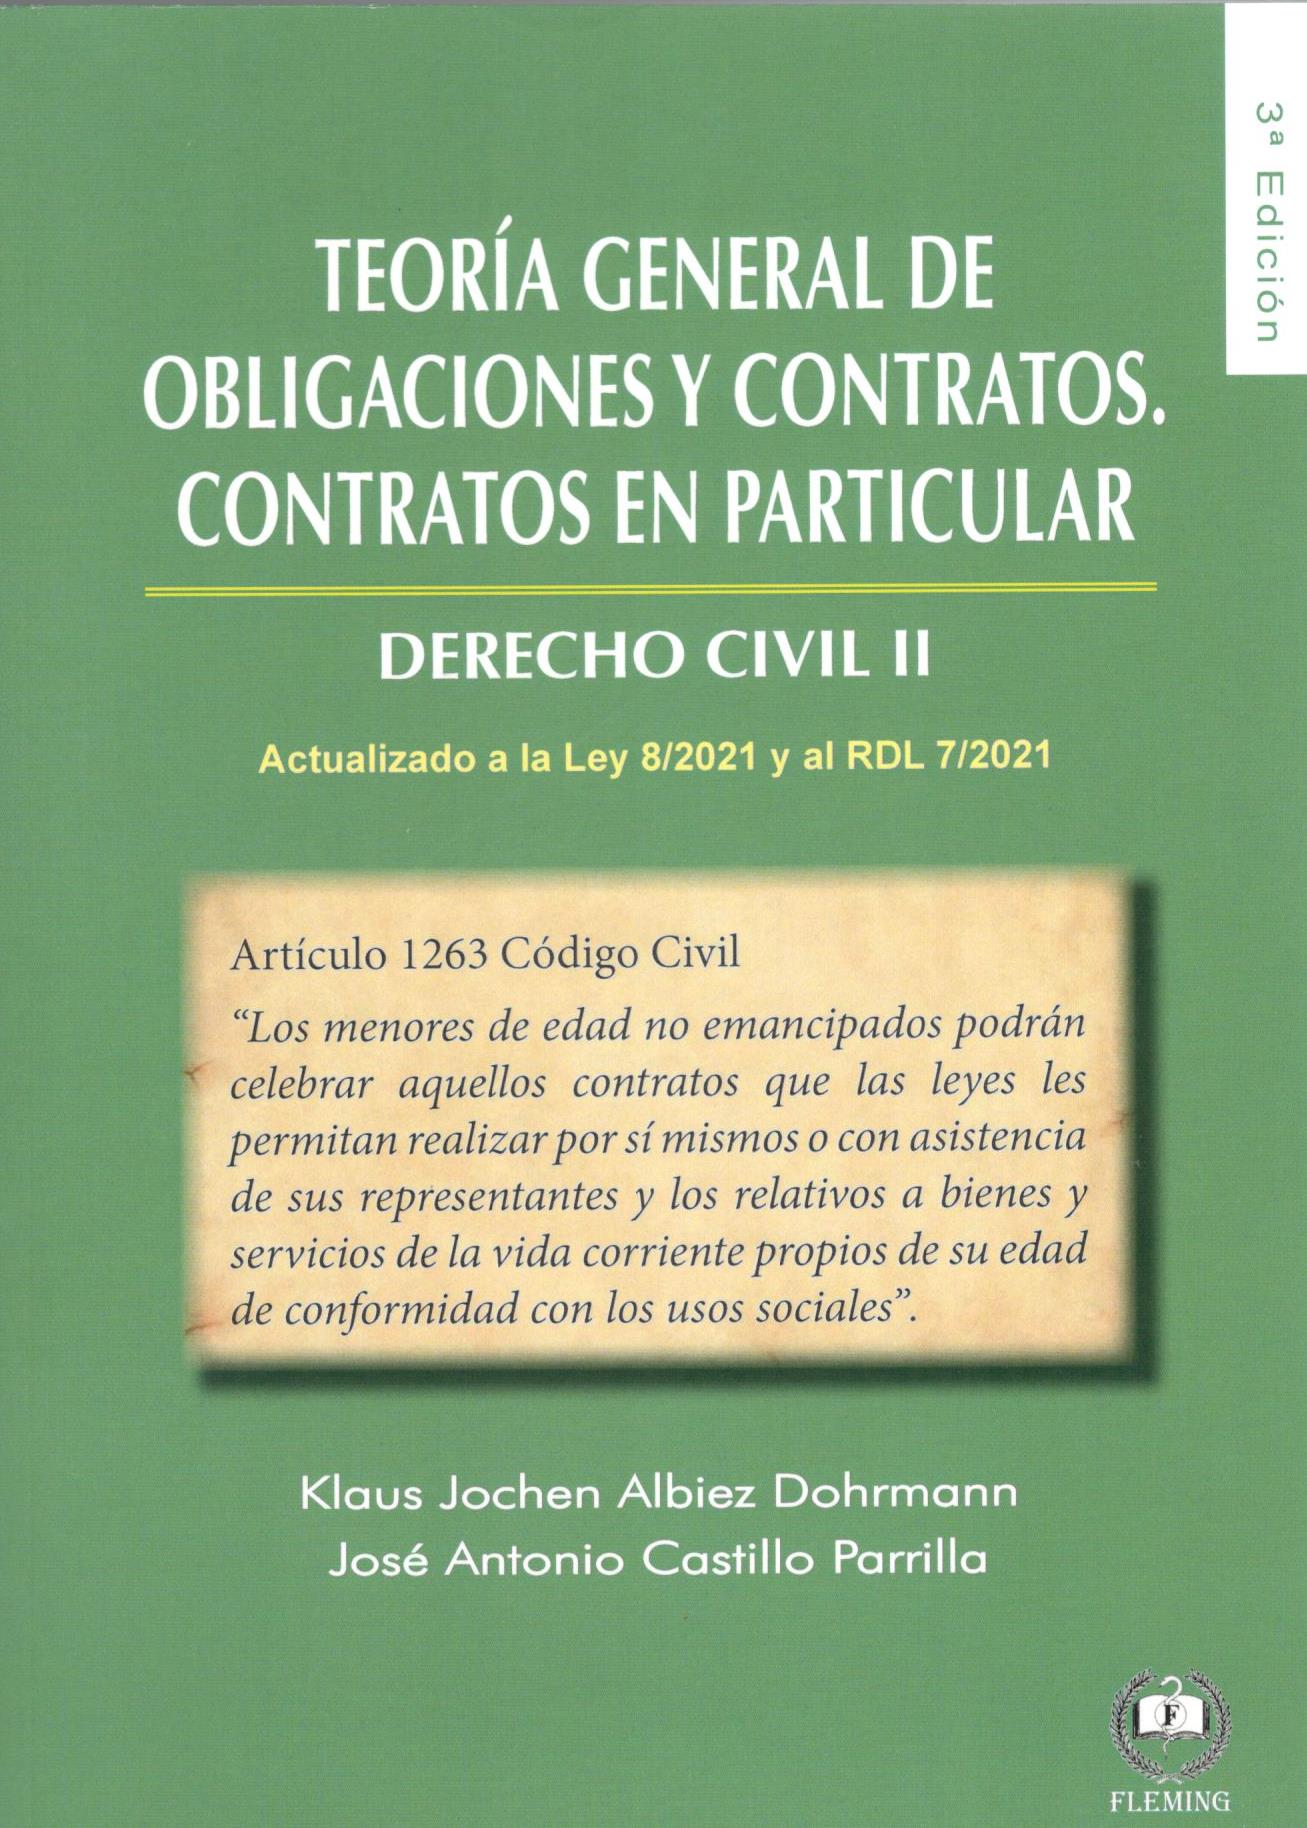 TEORIA GENERAL DE OBLIGACIONES Y CONTRATOS. CONTRATOS EN PARTICULAR. DERECHO CIVIL II